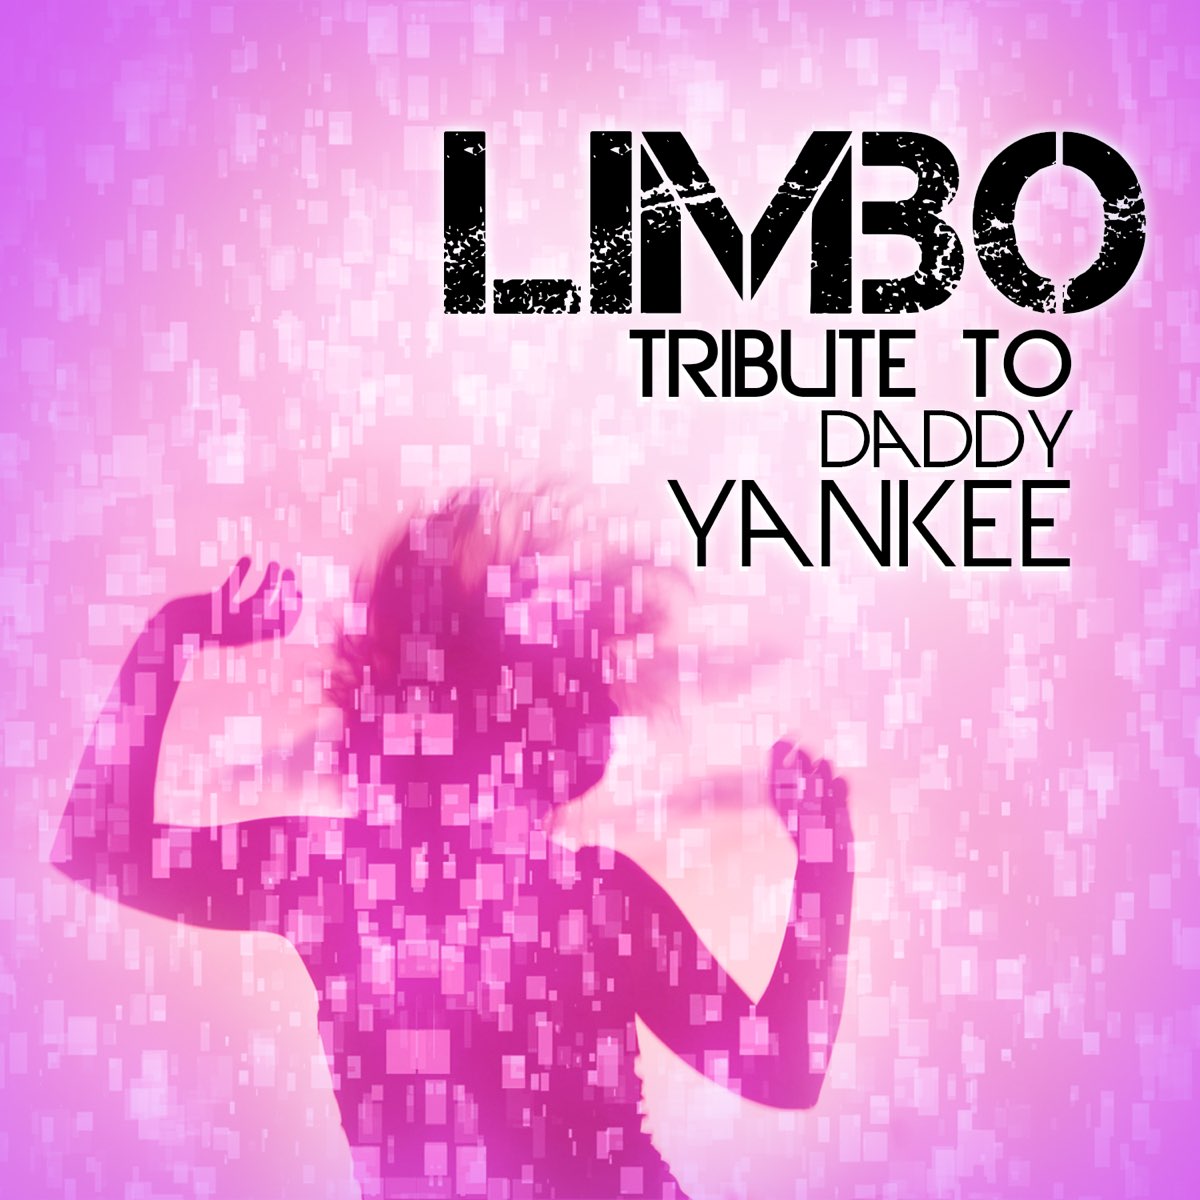 Limbo daddy. Daddy Yankee Limbo. Daddy Yankee Limbo фото. Limbo обложка песни Daddy Yankee. Лимбо обложка.